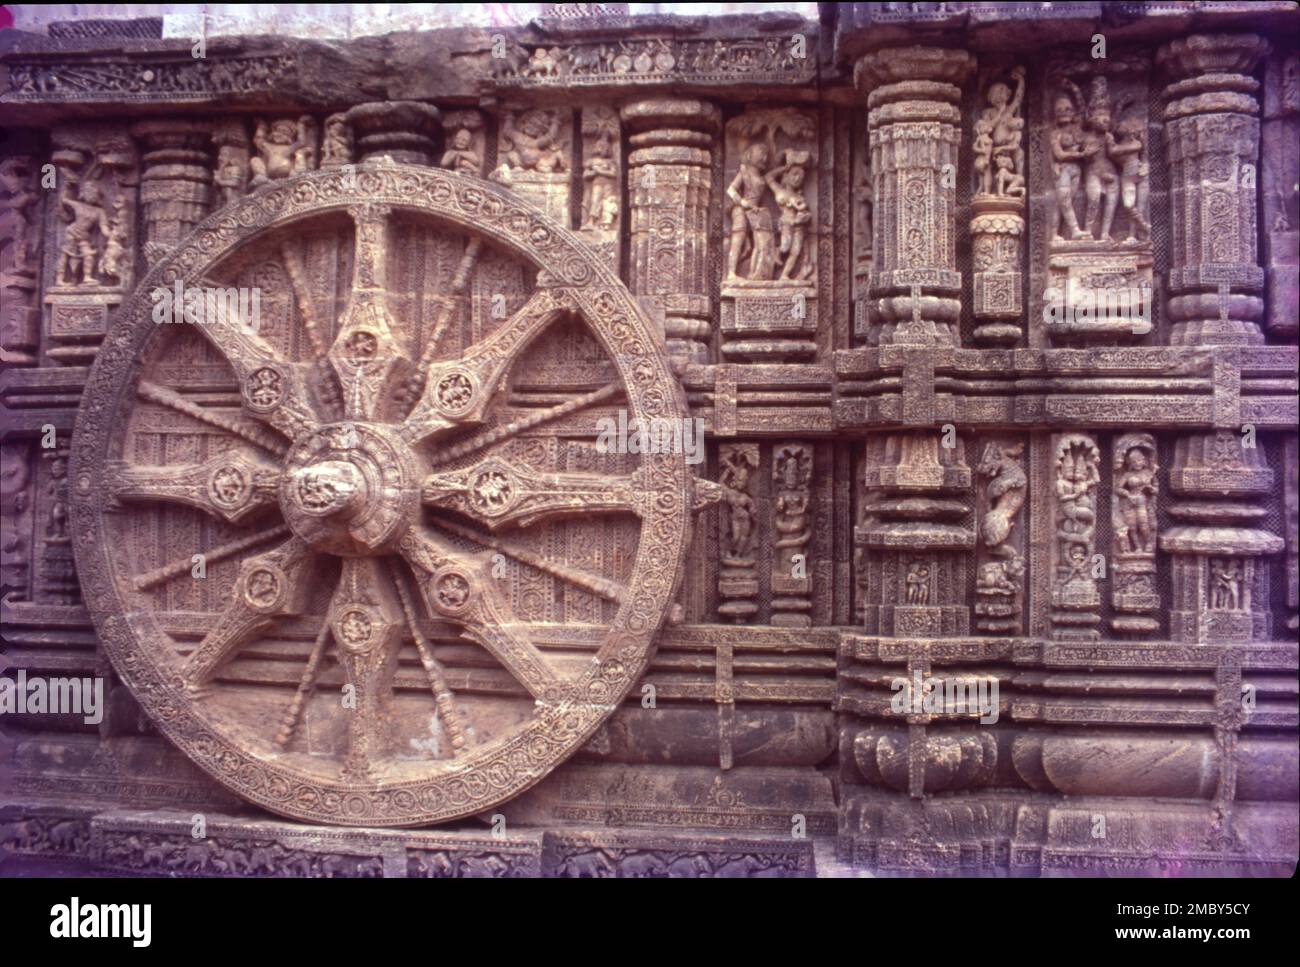 Il Tempio del Sole di Konark è un tempio del Sole del 13th° secolo a Konark, a nord-est della città di Puri, sulla costa del distretto di Puri, Odisha, India. Il tempio è attribuito al re Narasimhadeva i della dinastia Ganga orientale circa 1250 d.C. Sulle rive della Baia del Bengala, bagnata dai raggi del sole nascente, il tempio di Konarak è una rappresentazione monumentale del carro del dio del sole Surya; le sue 24 ruote sono decorate con disegni simbolici ed è guidata da una squadra di sei cavalli. Si possono osservare tre immagini di Dio del Sole in tre direzioni per catturare i raggi del Sole all'alba, a mezzogiorno e al tramonto. Foto Stock